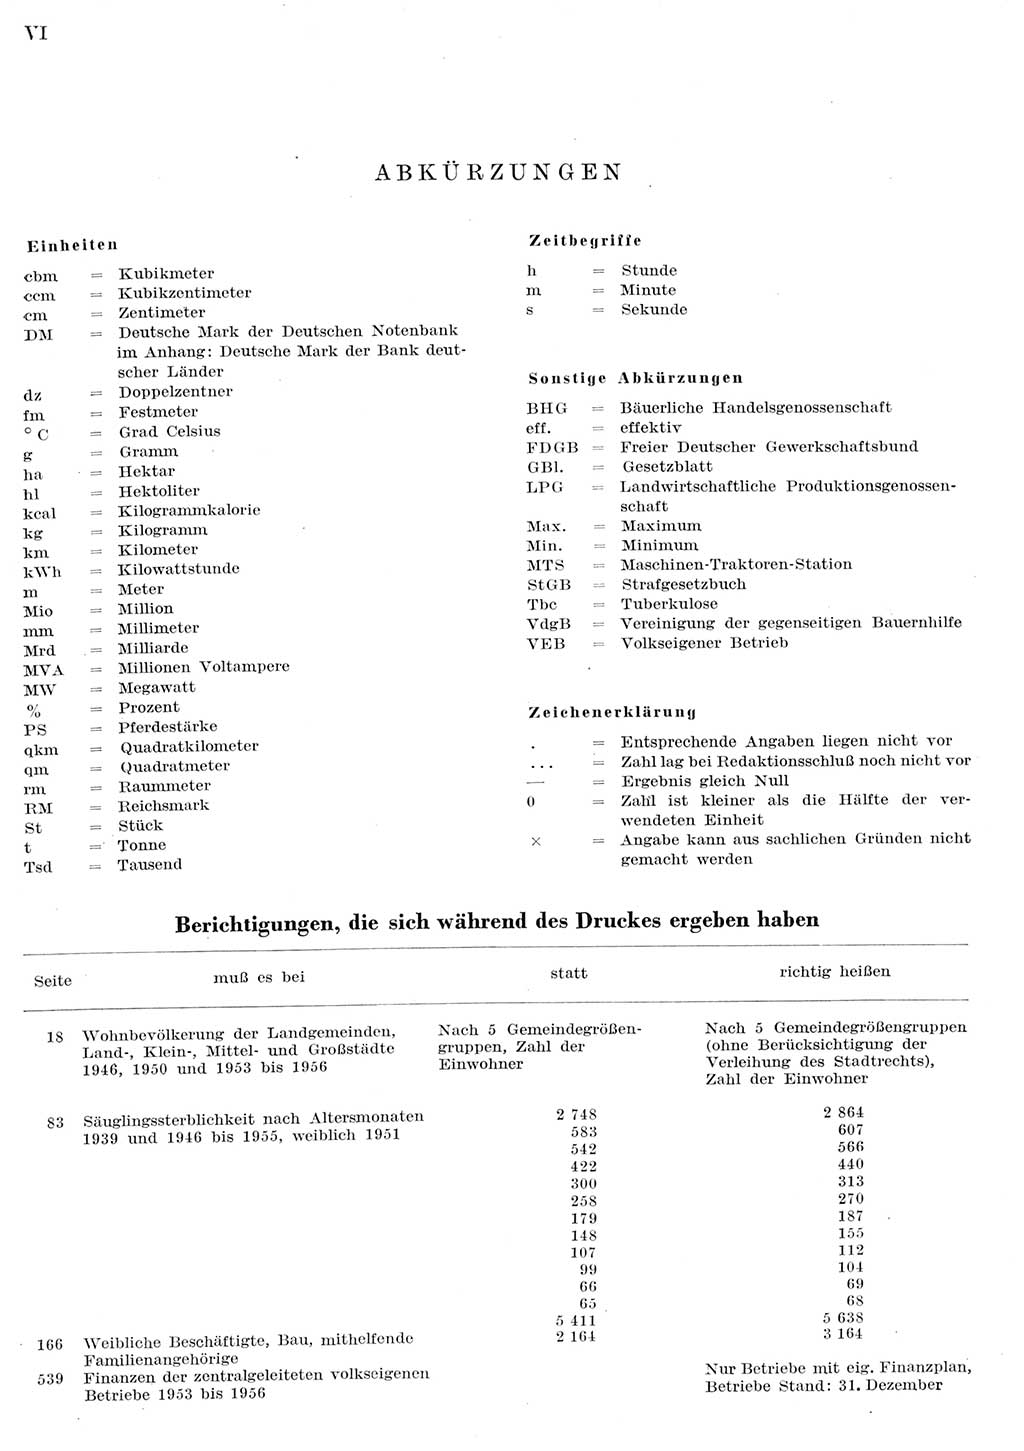 Statistisches Jahrbuch der Deutschen Demokratischen Republik (DDR) 1956, Seite 6 (Stat. Jb. DDR 1956, S. 6)